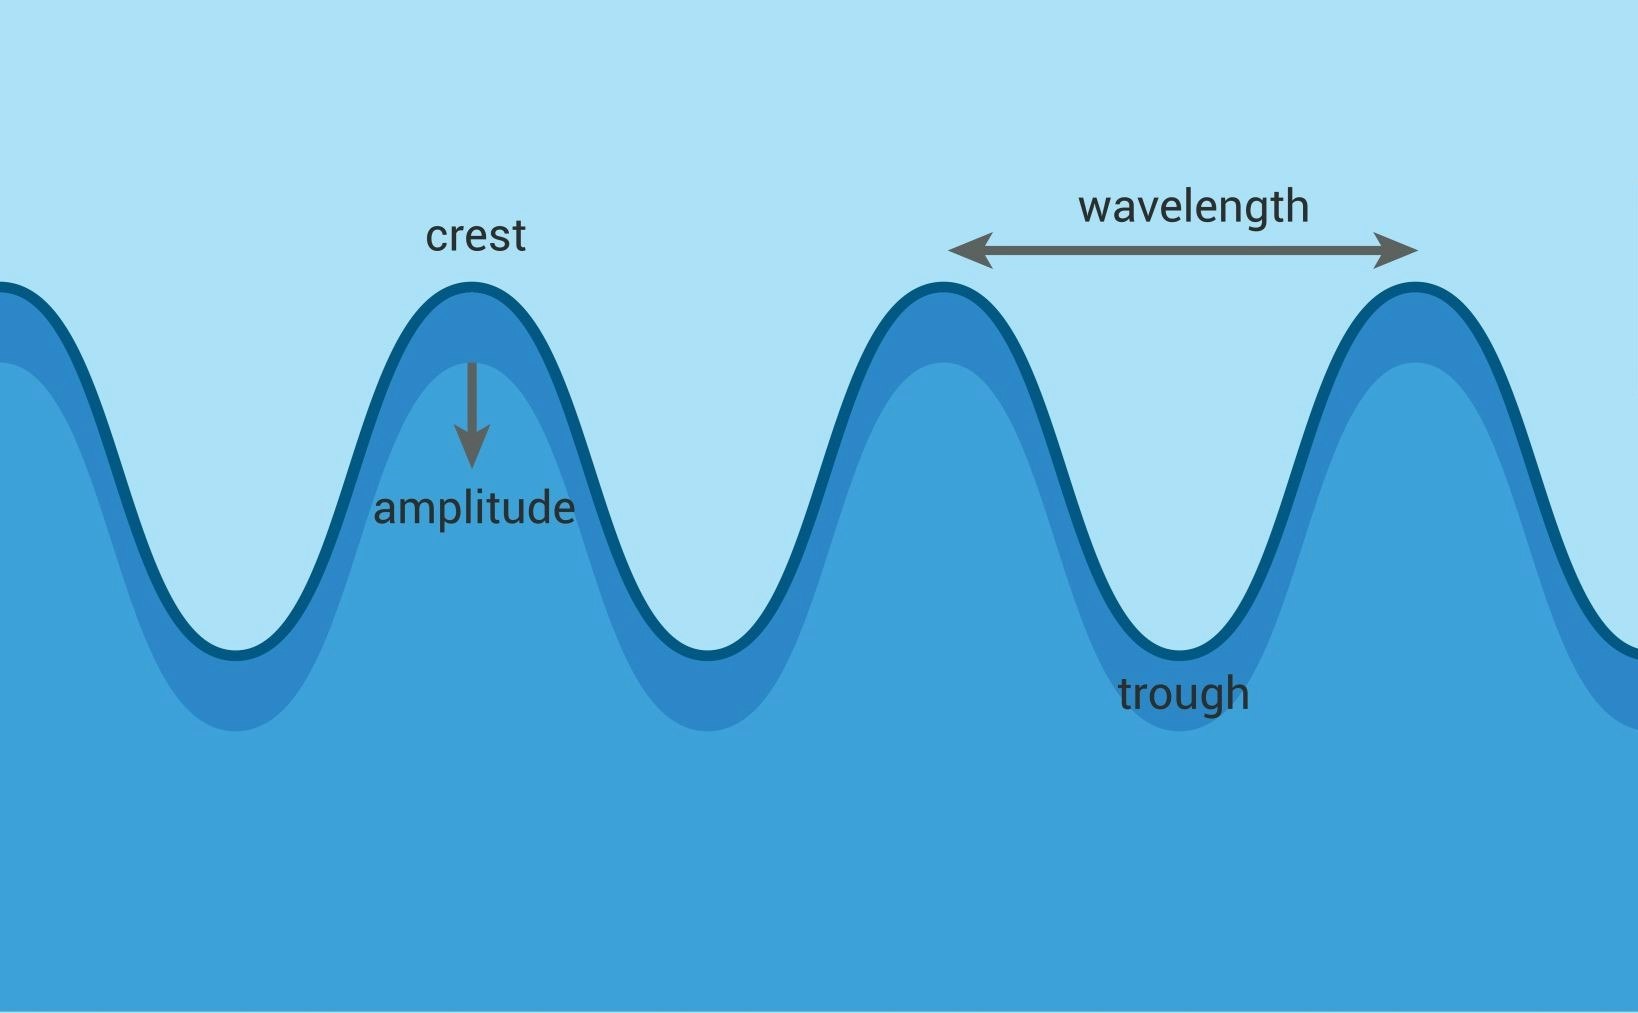 Grafika koja prikazuje karakteristike valova na moru